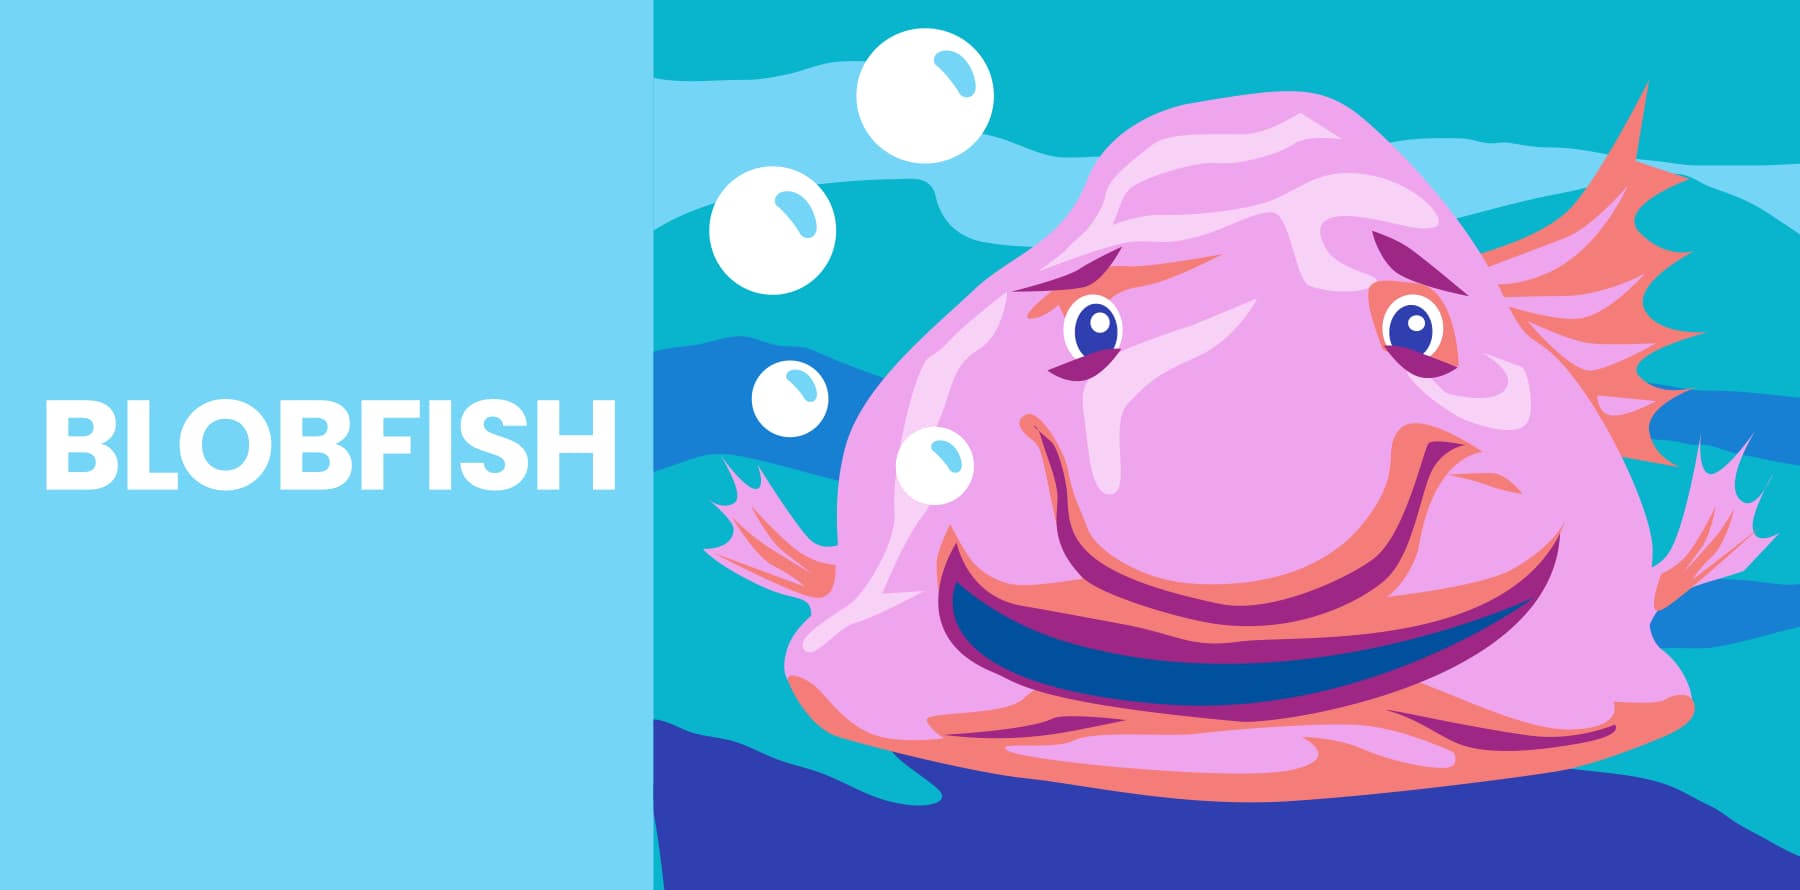 Blobfish 🐡 Are They The UGLIEST Animals? #blobfish #blobfishart #blob